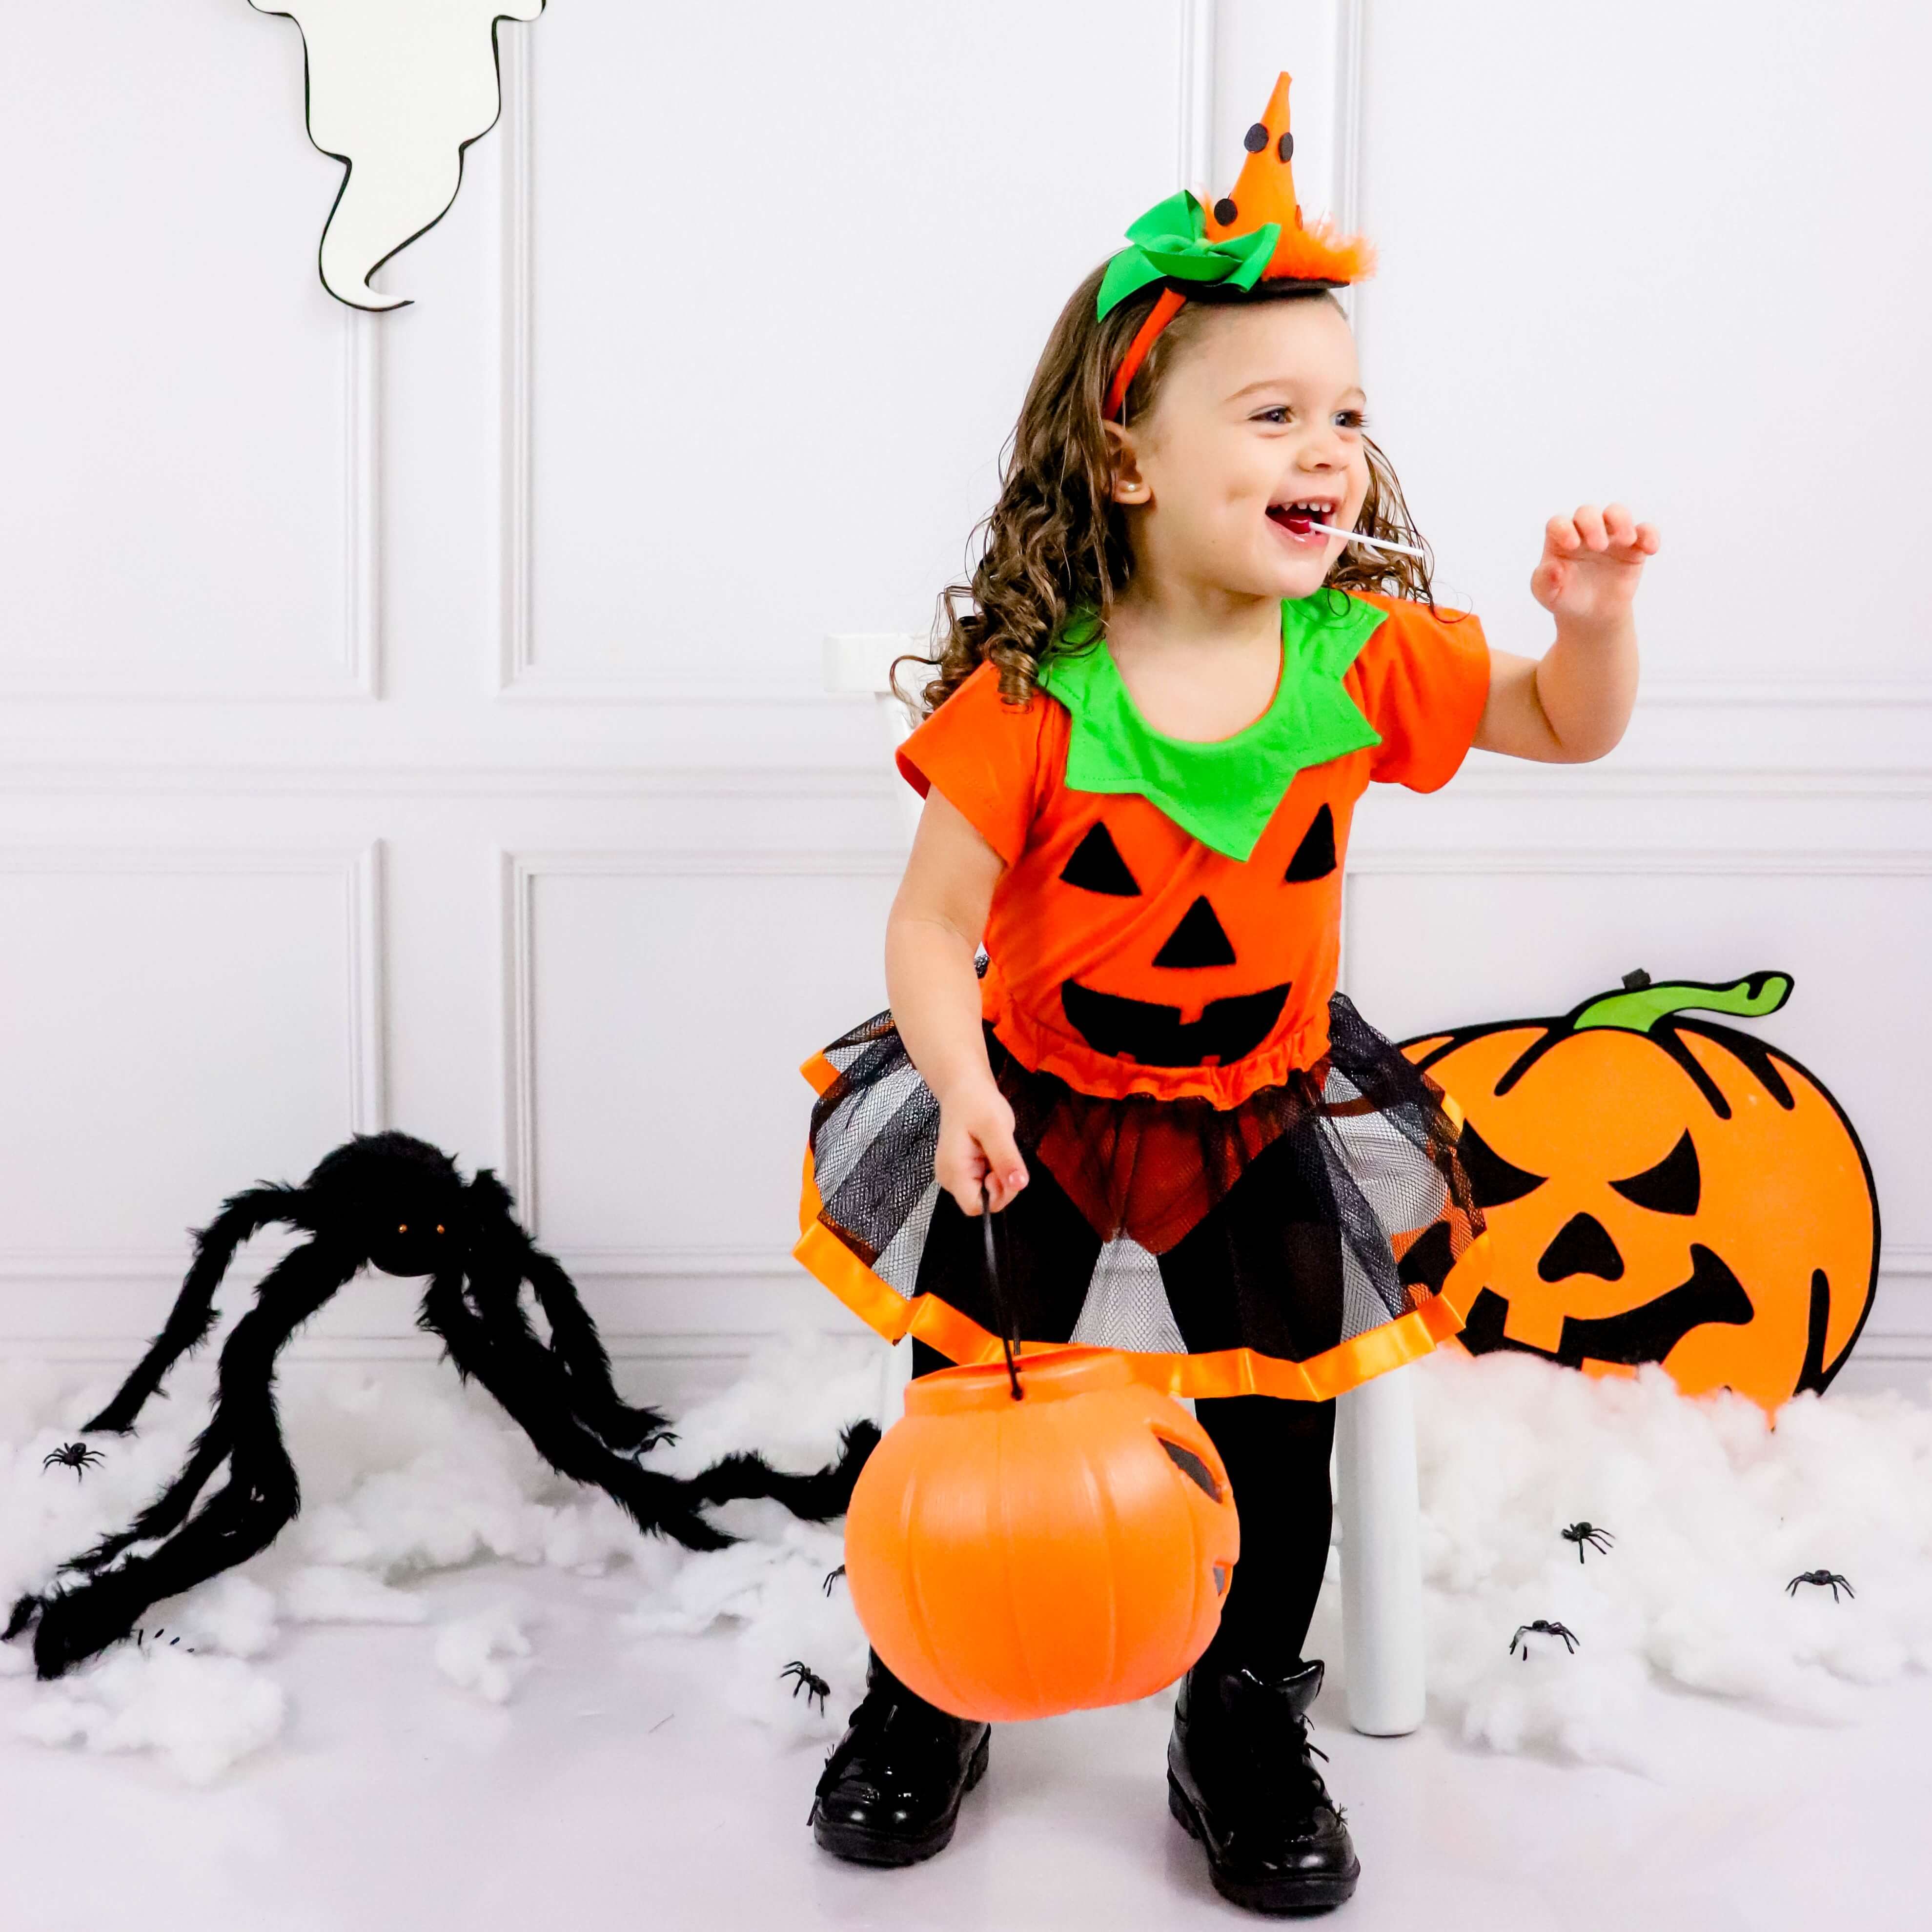 Fantasia Bruxa Infantil Algodão Halloween